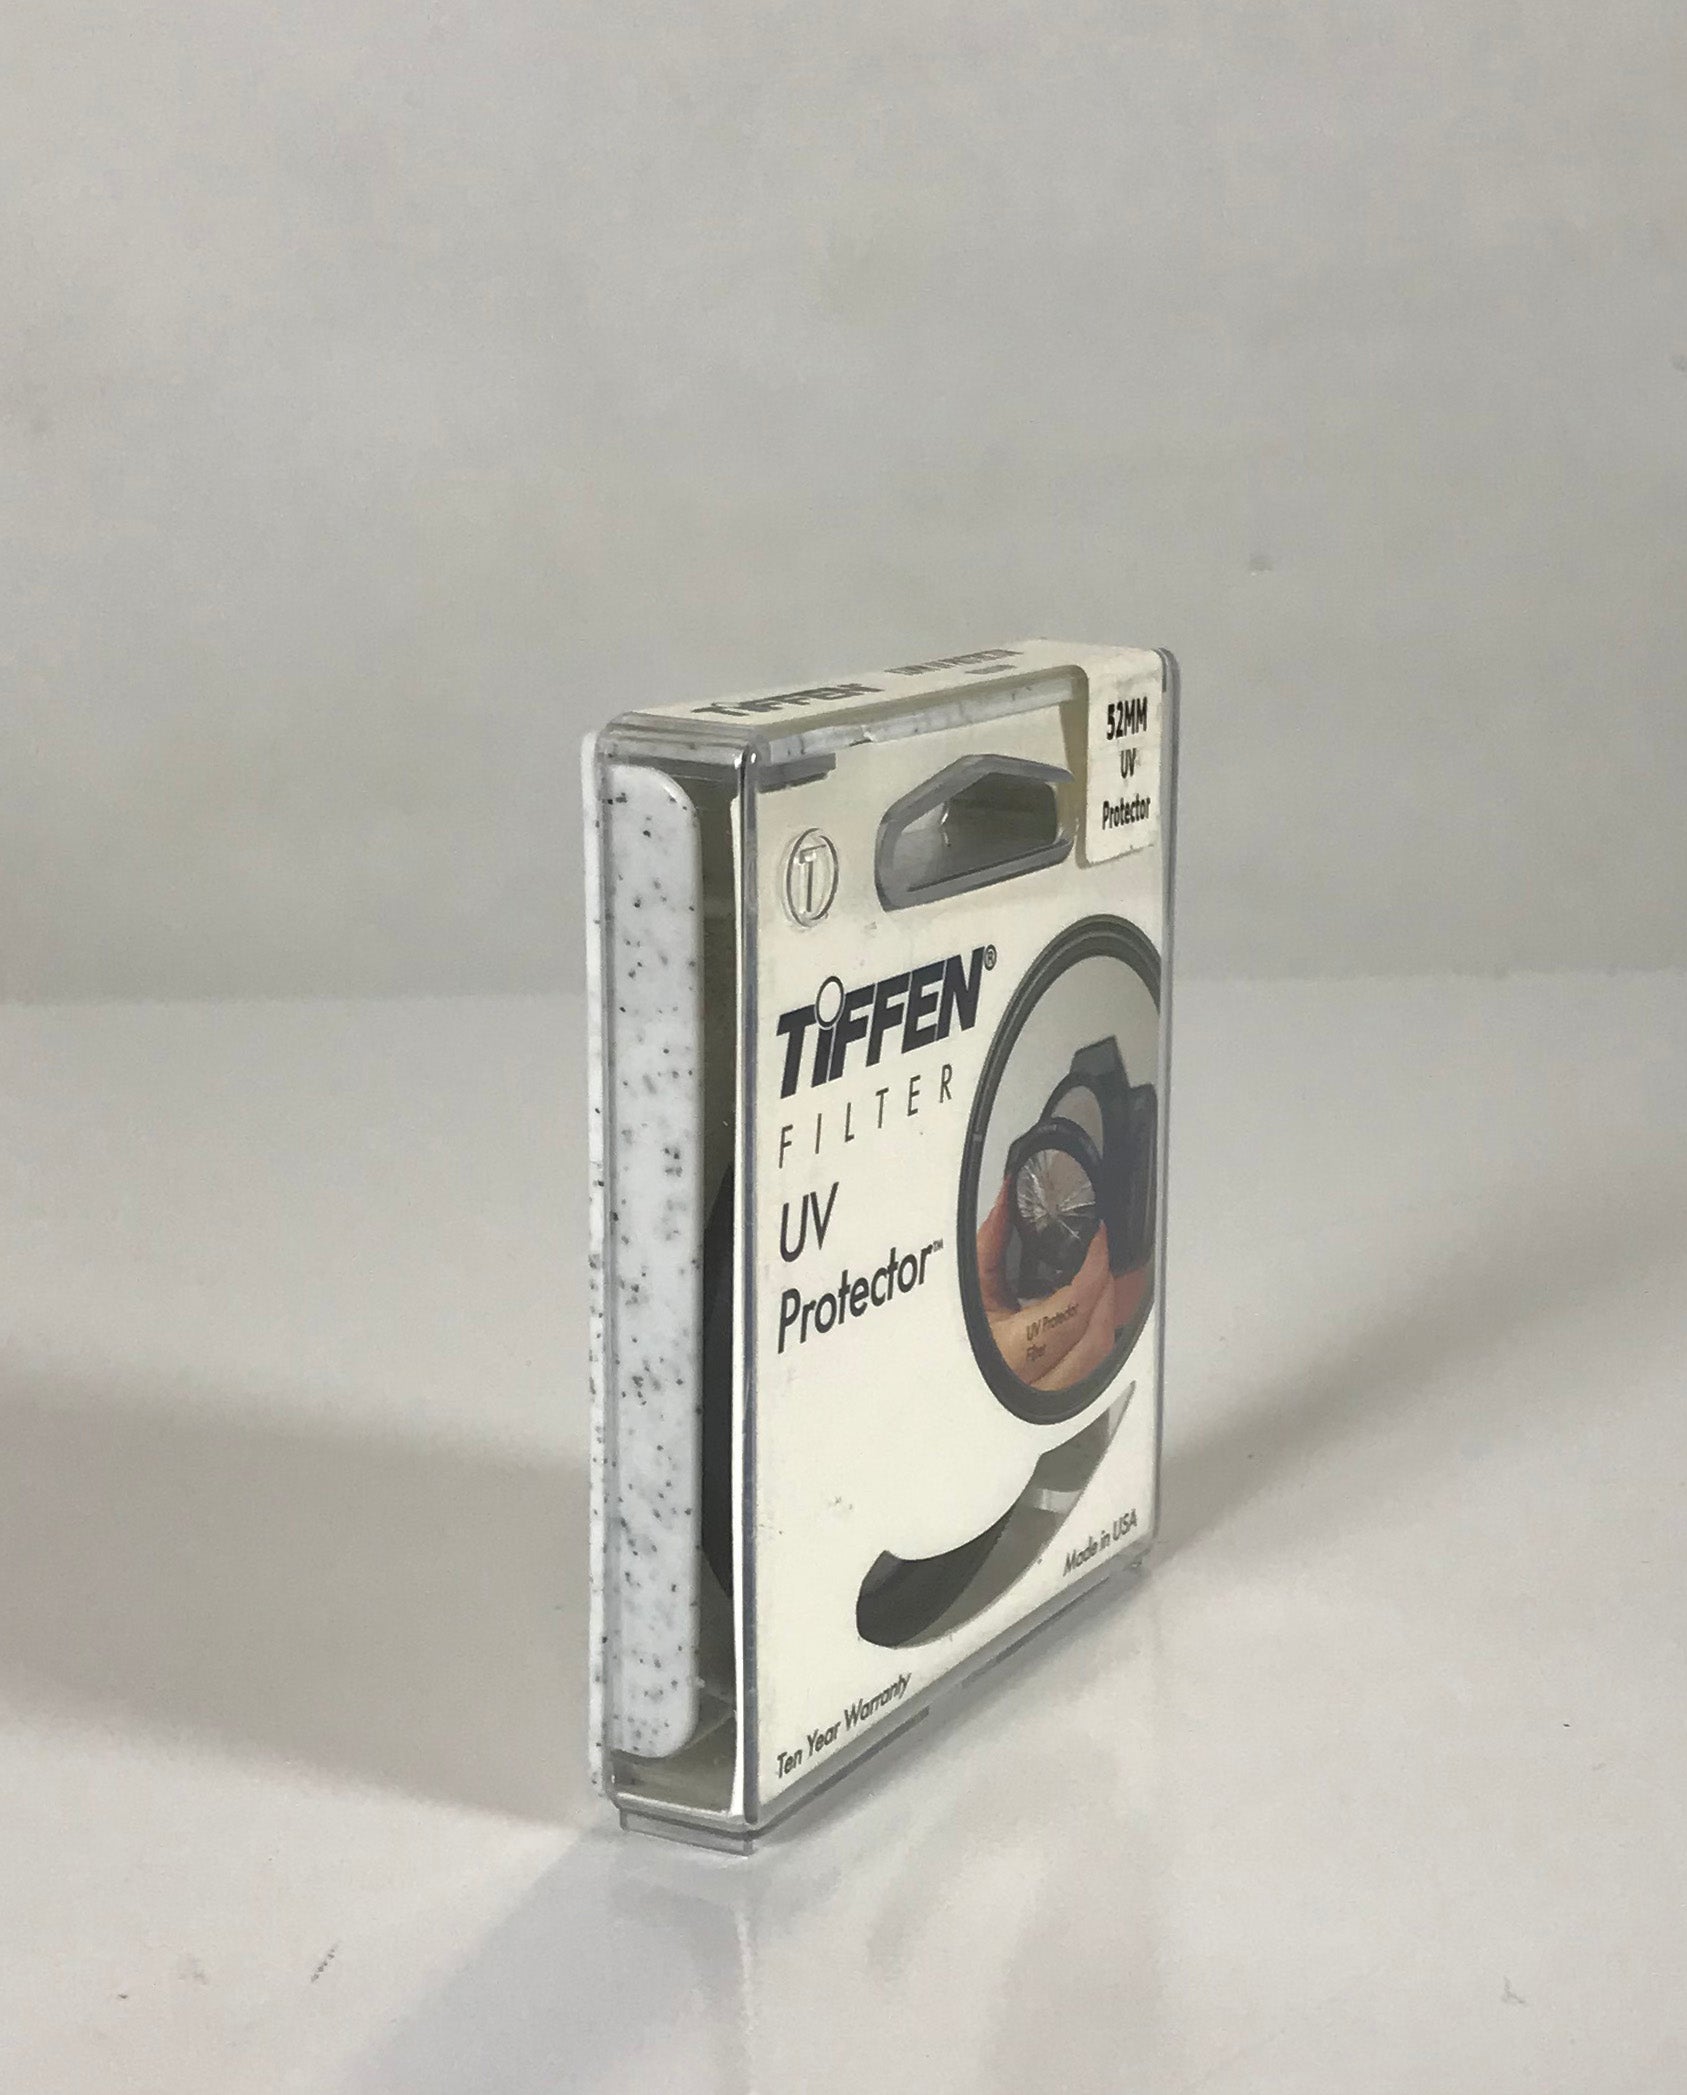 Tiffen 52mm UV Protector Camera Lens Filter